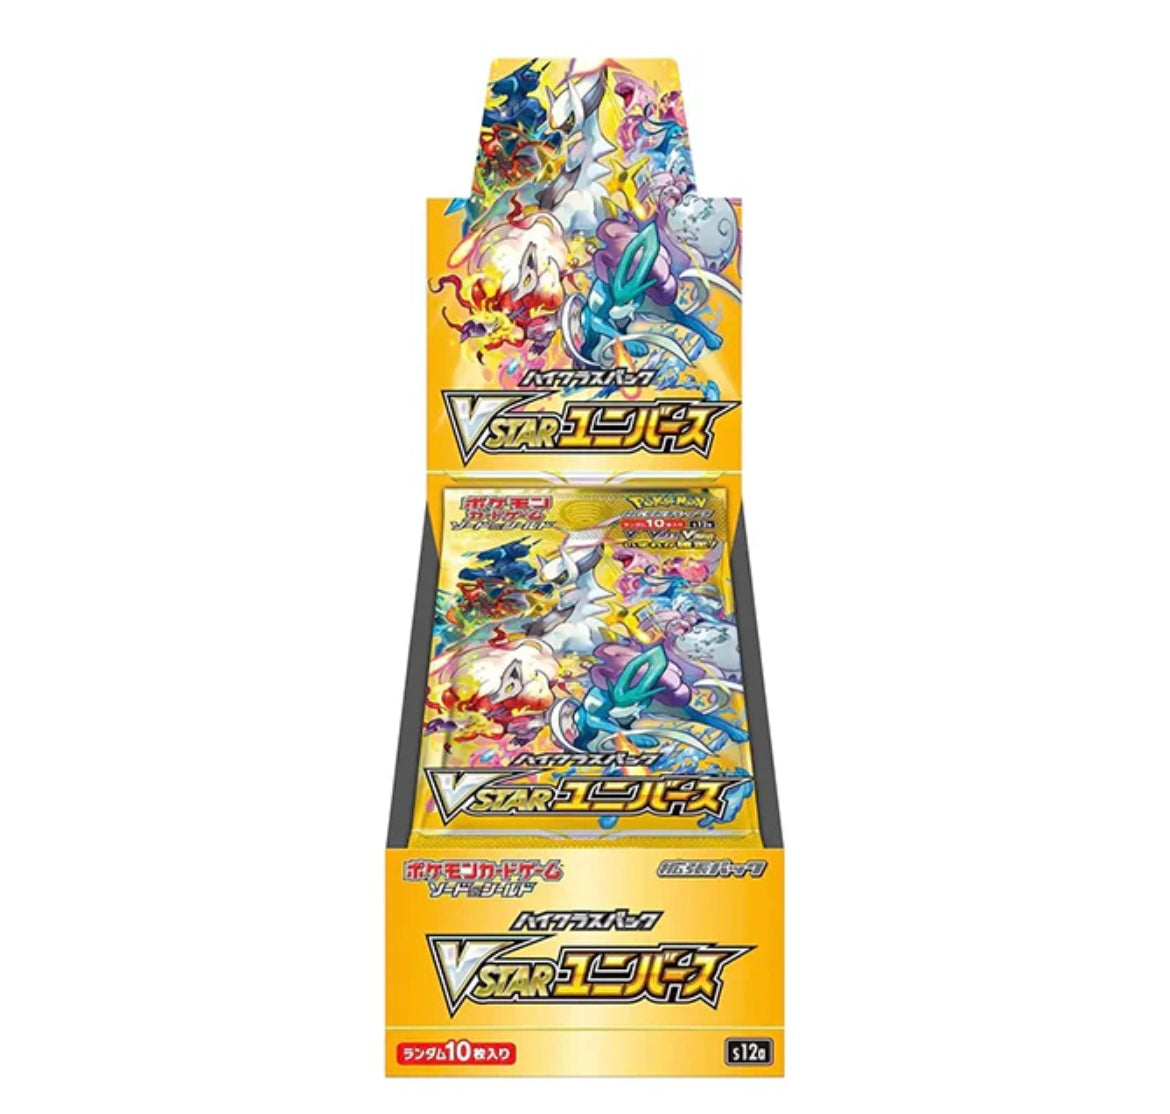 Pokémon Vstar Universe Booster Box Japanese